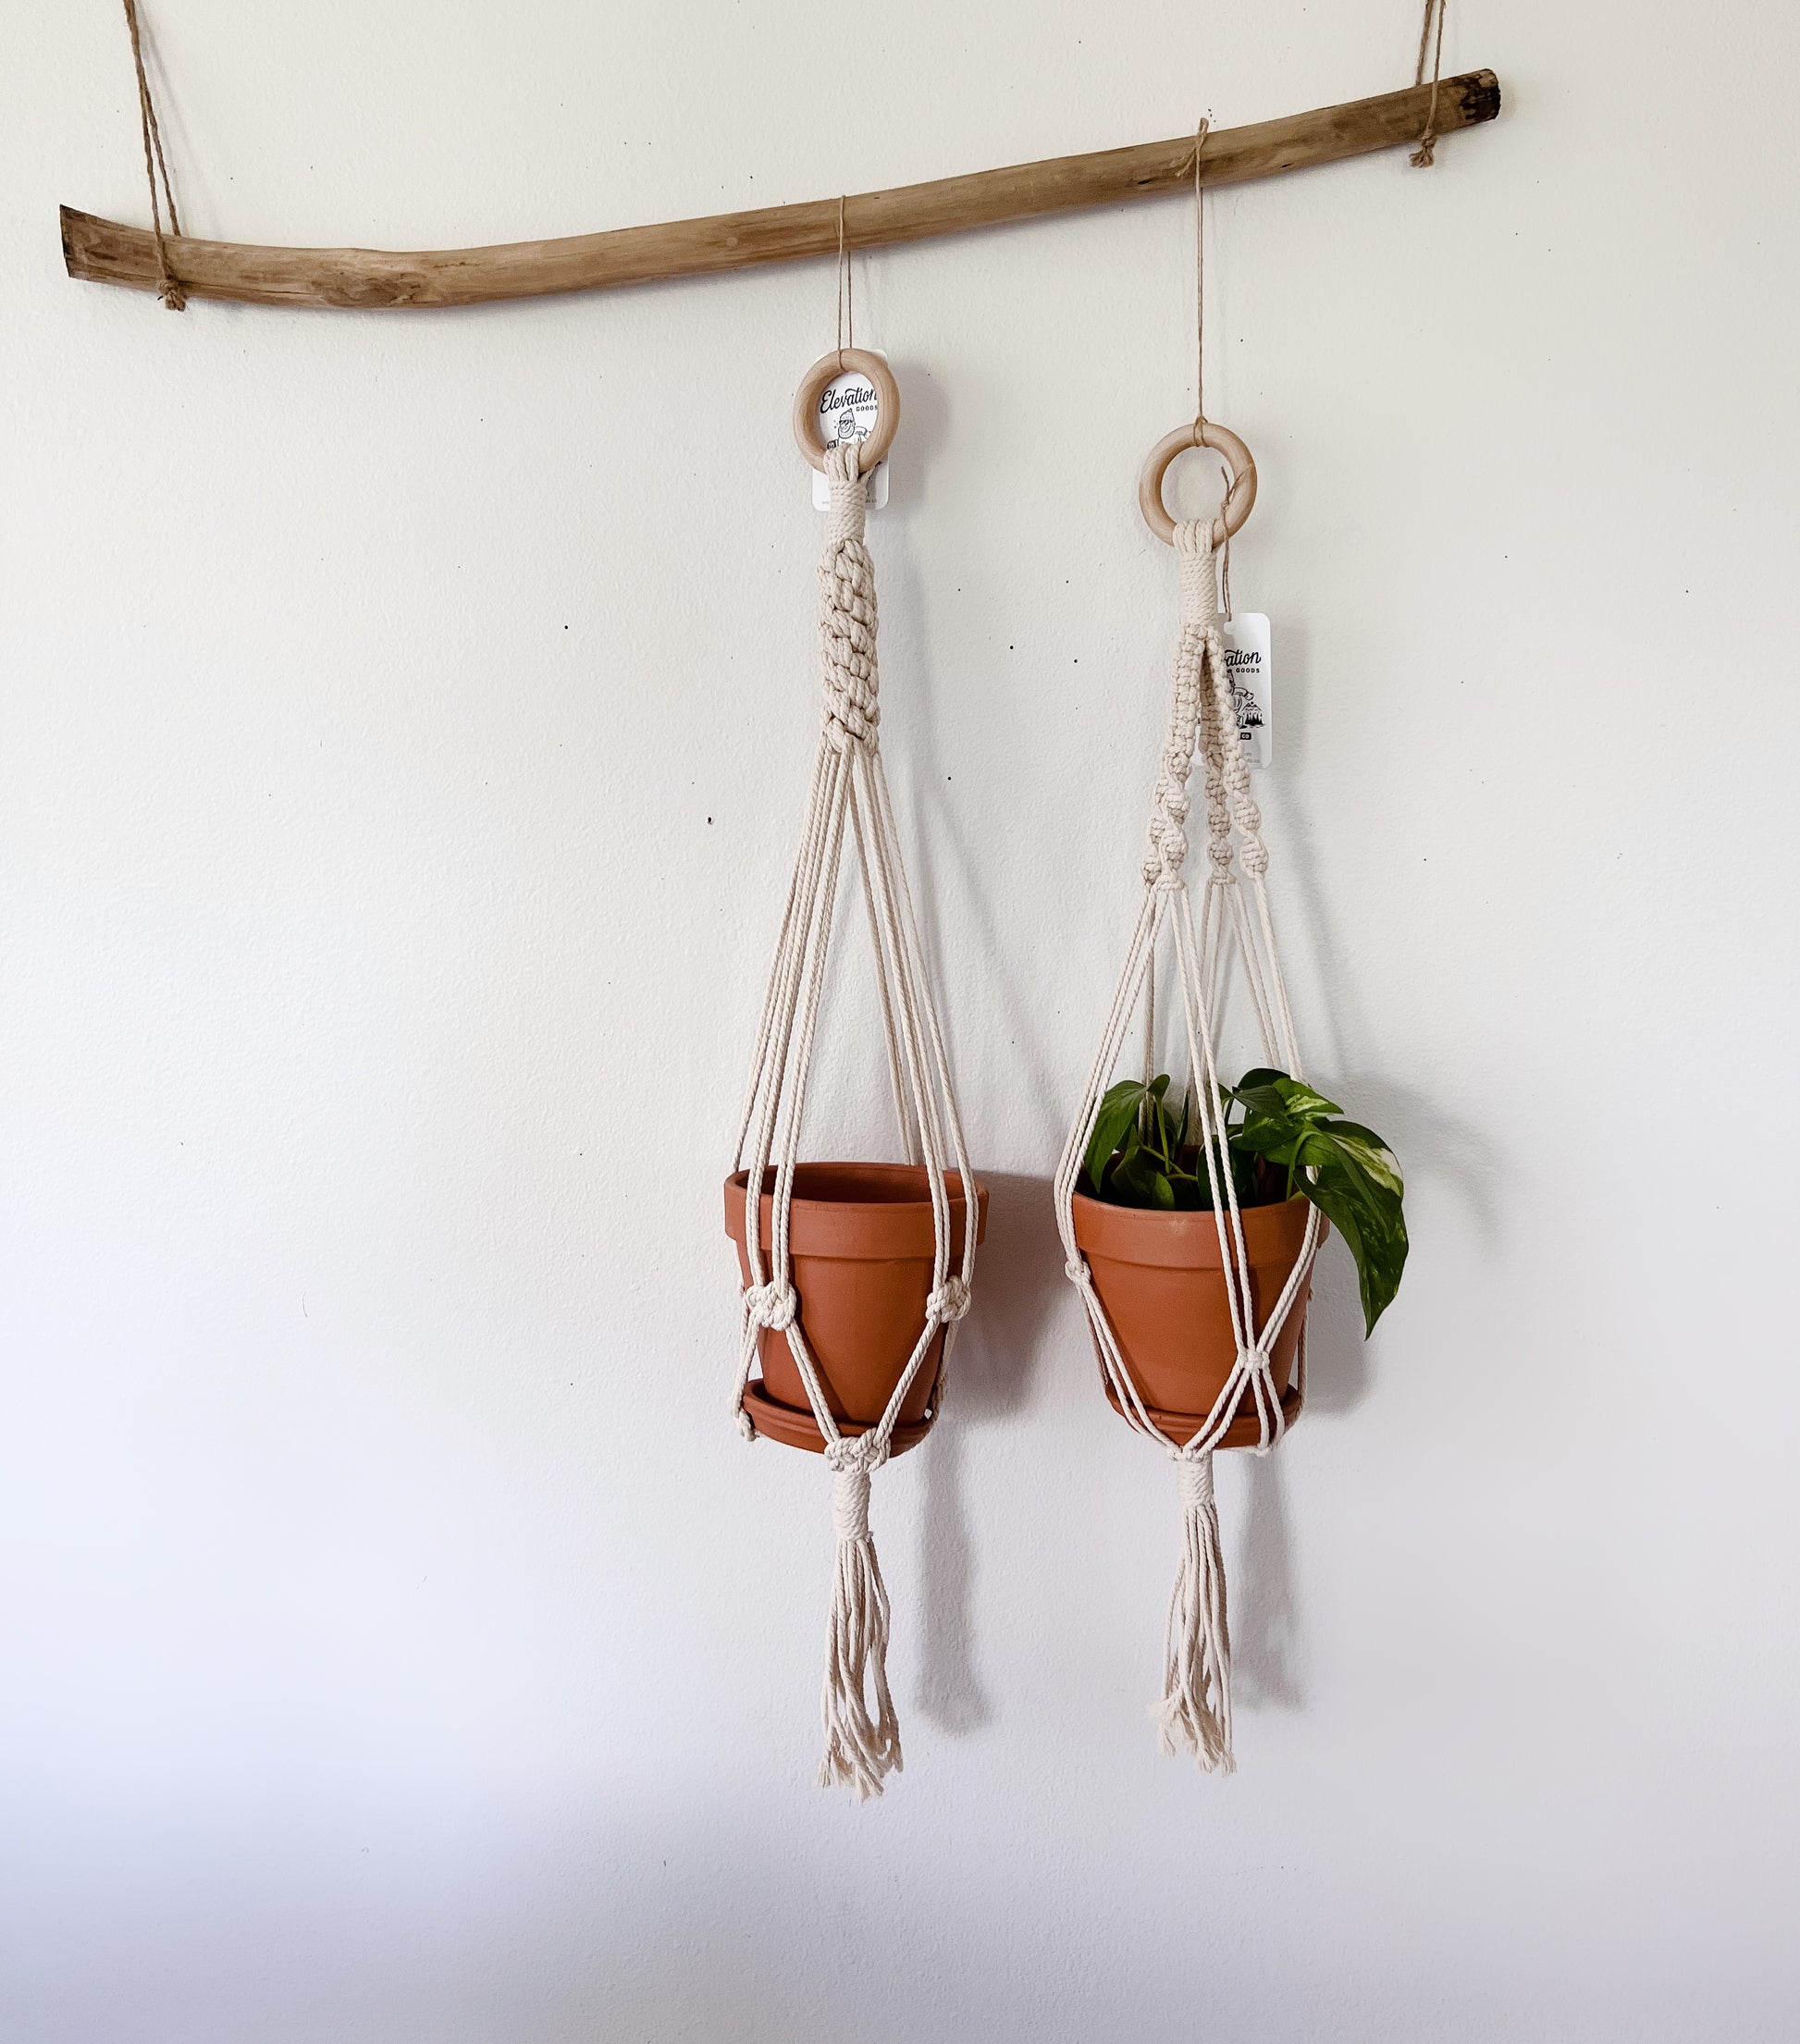 Hanging rope planter